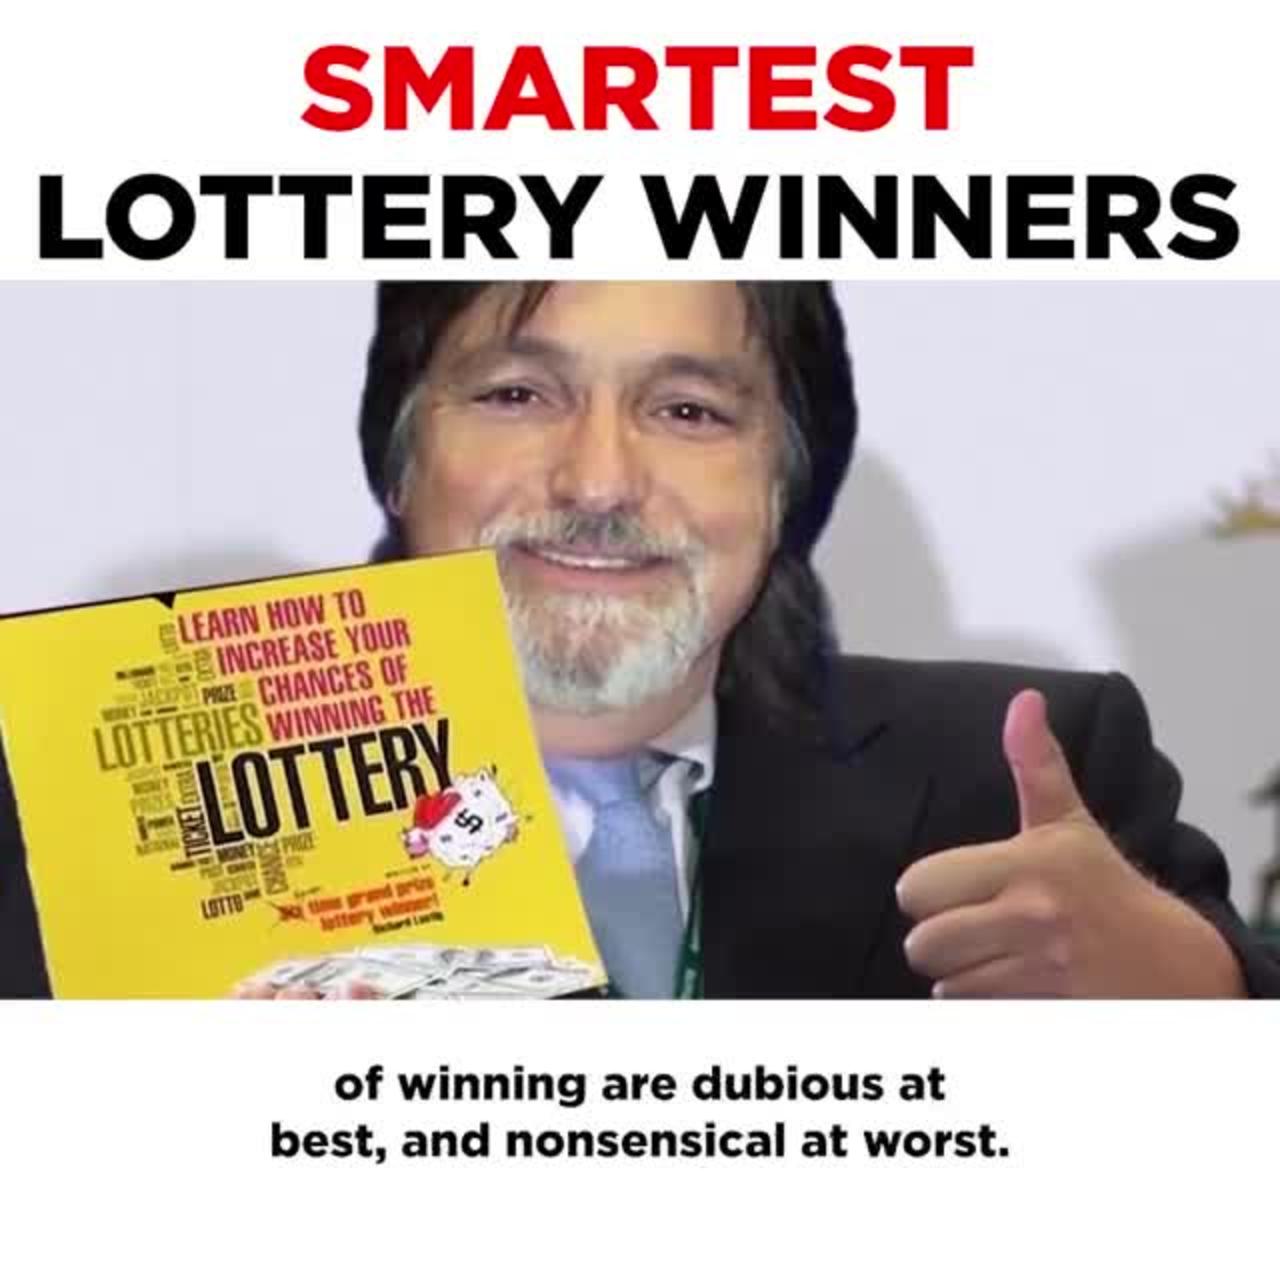 Not that smart lottery winners